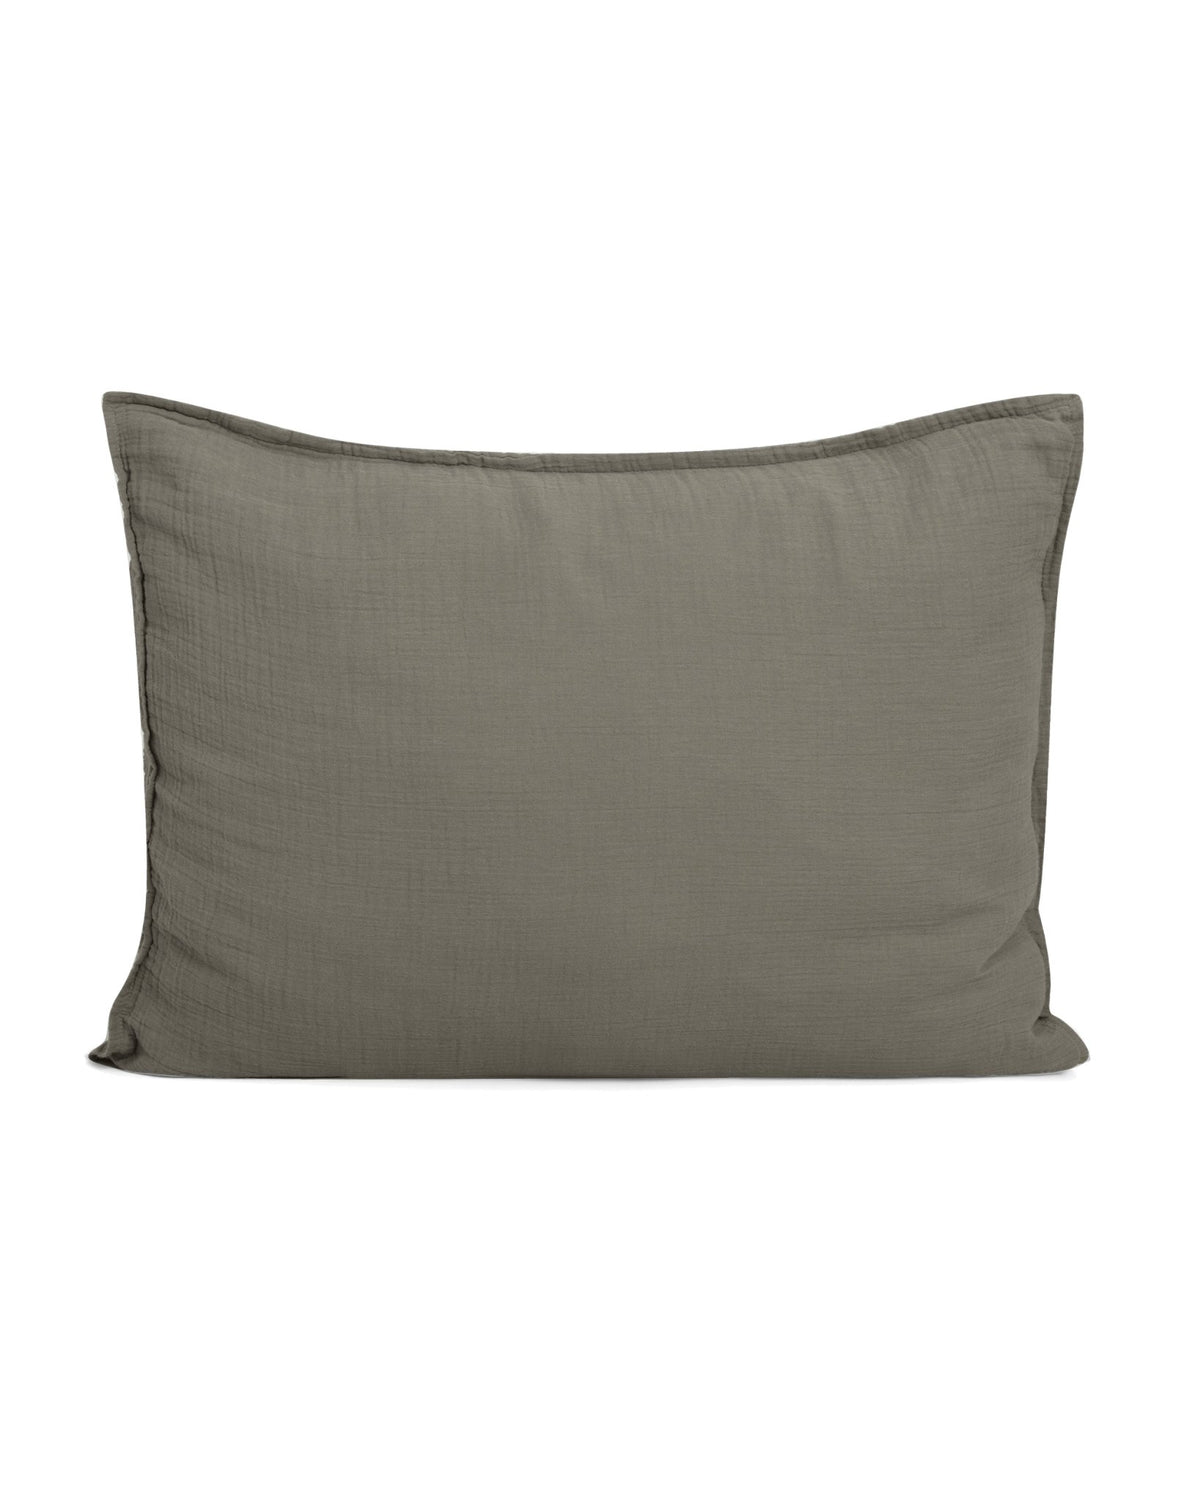 Muslin Single Pillowcase | Geranium by Garbo & Friends - Maude Kids Decor